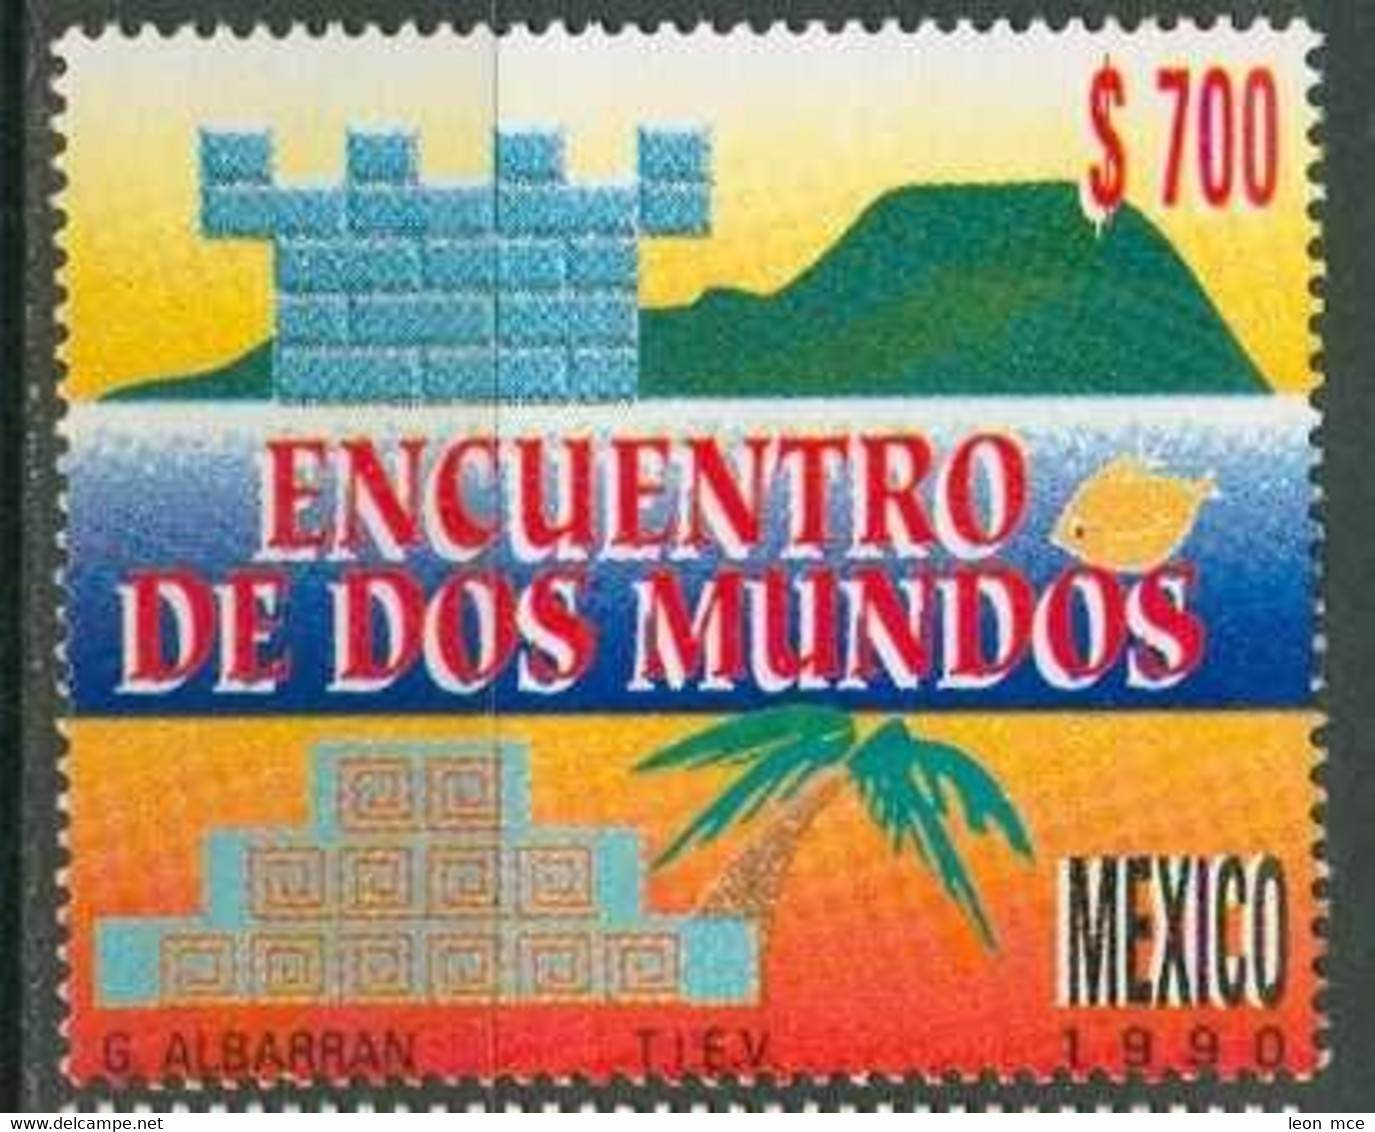 1990 MÉXICO ENCUENTRO DE DOS MUNDOS Sc. 1668 MNH, Discovery Of America - Messico